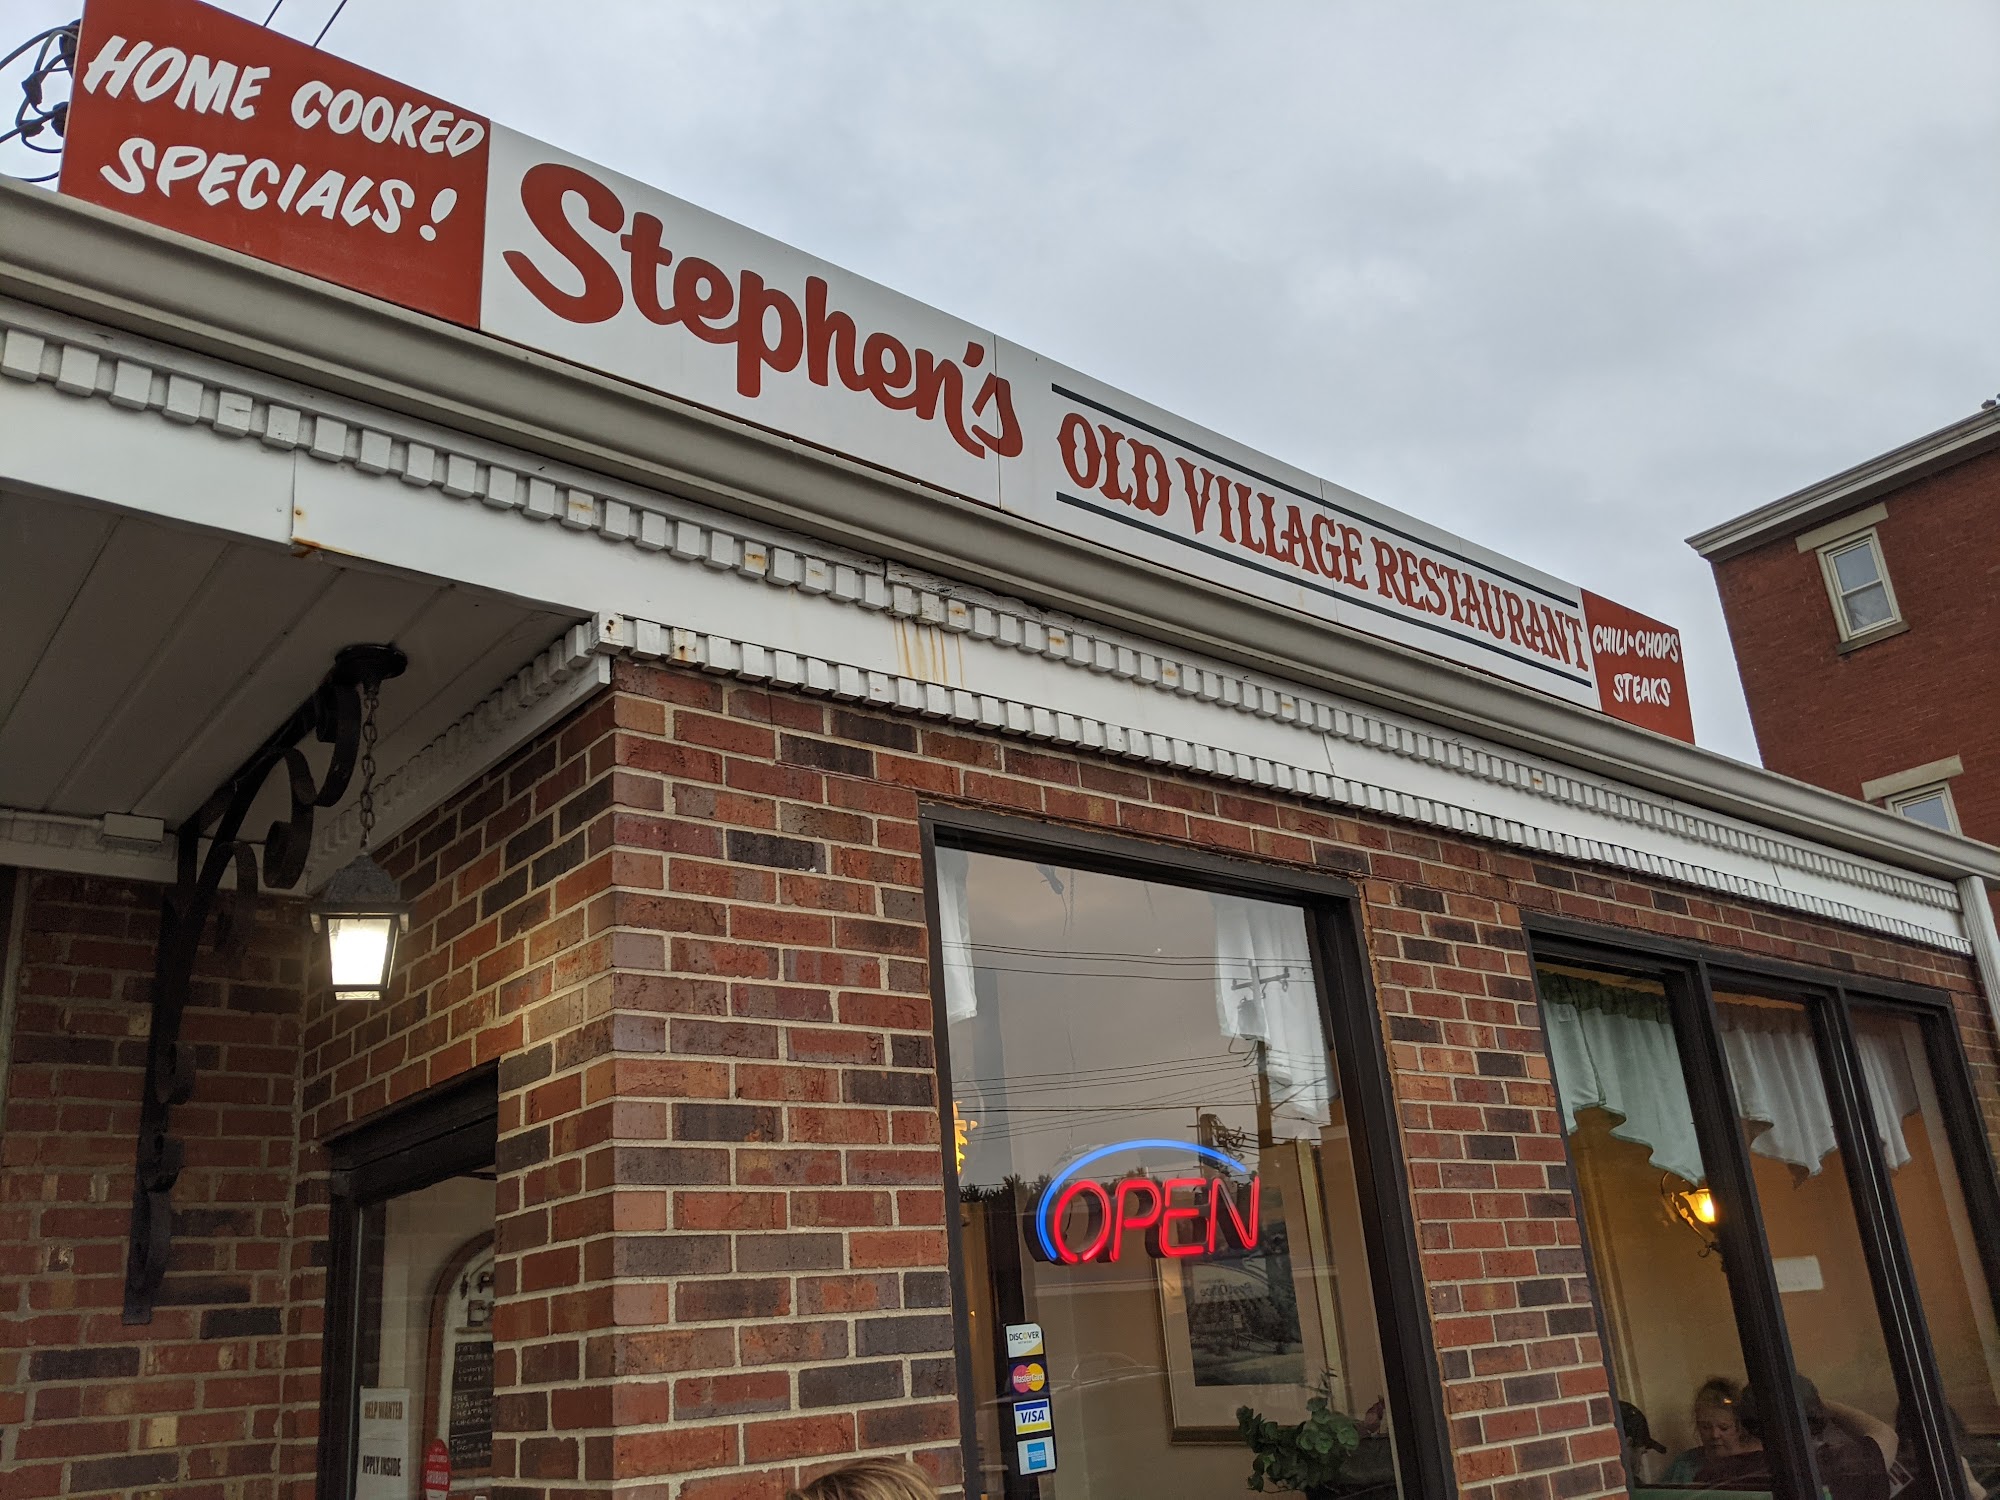 Stephen’s Old Village Restaurant